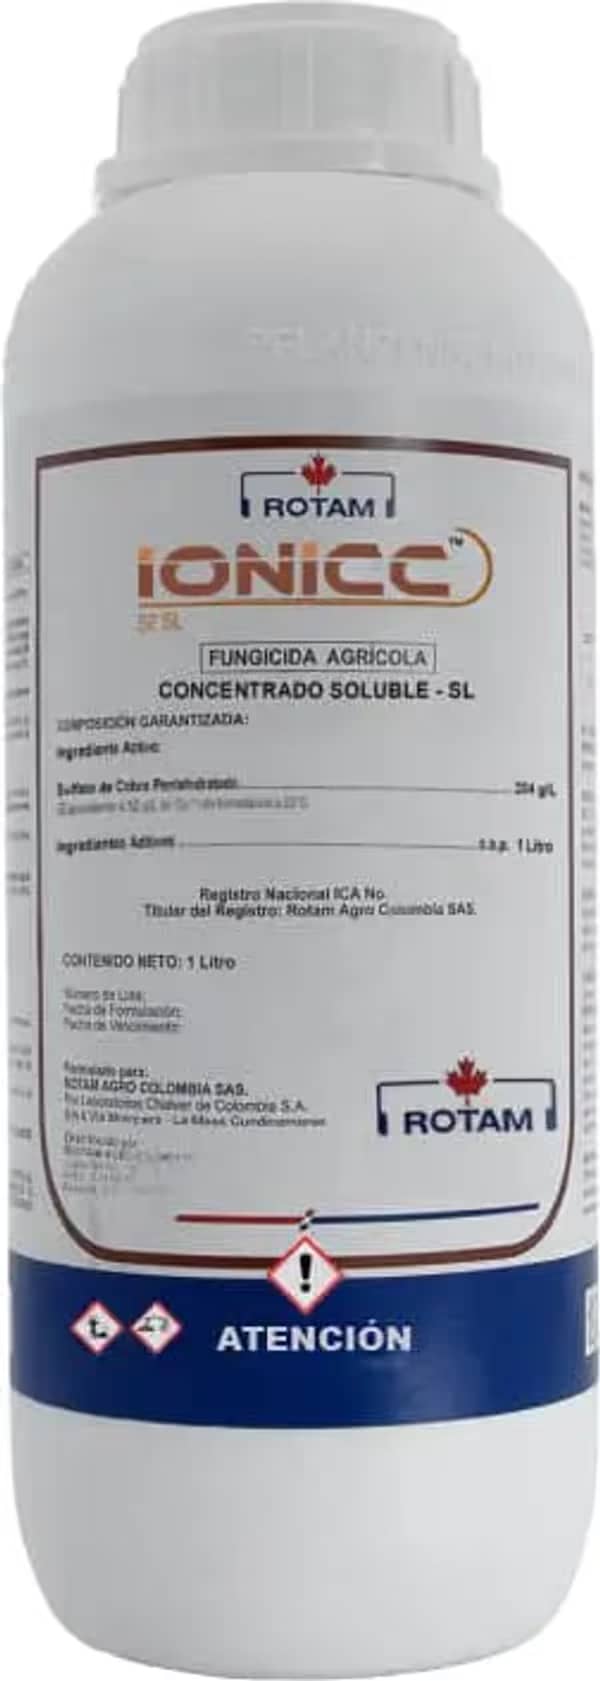 Fungicida IONICC x 1 Lt - Rotam